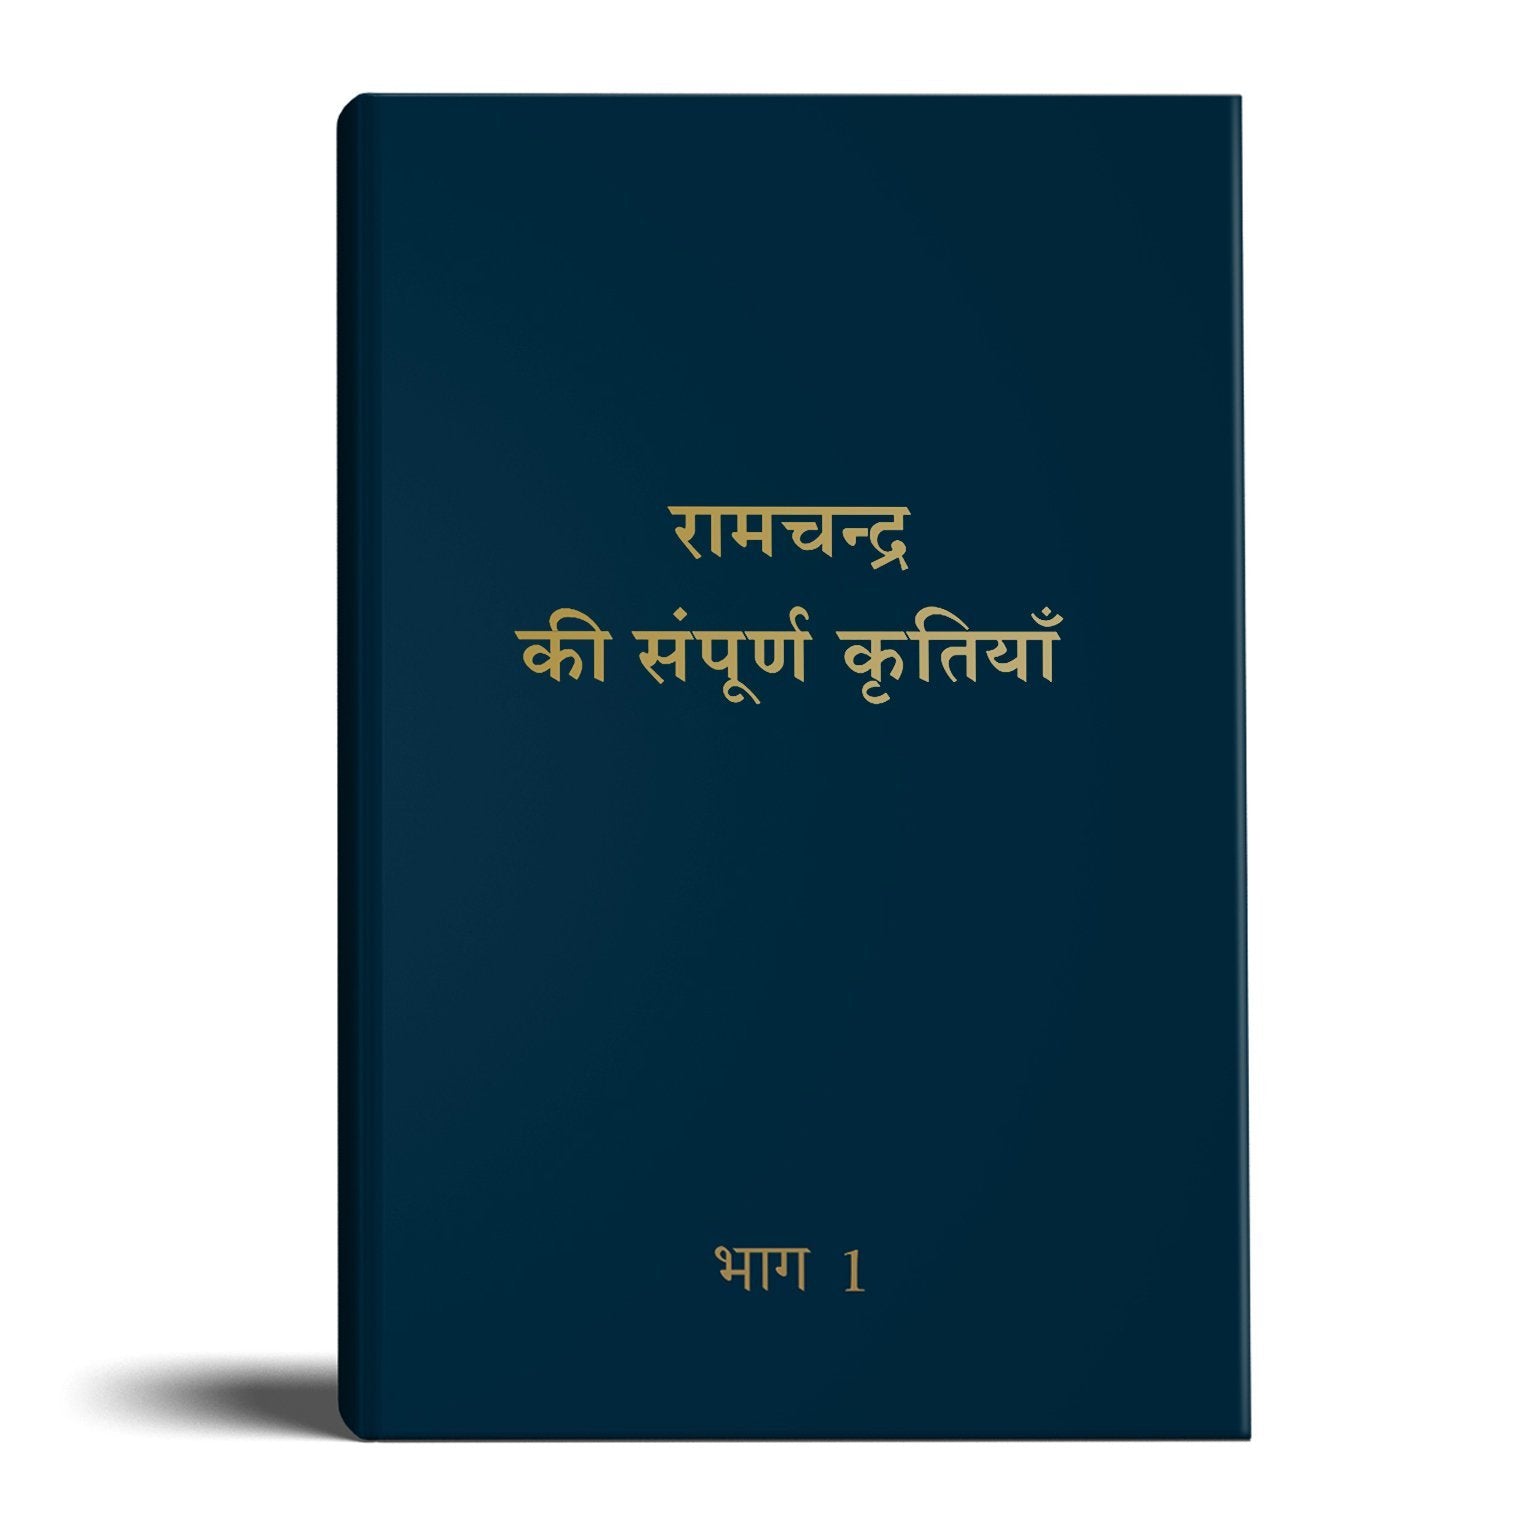 Complete Work of Ram Chandra( Babuji) Volume 1